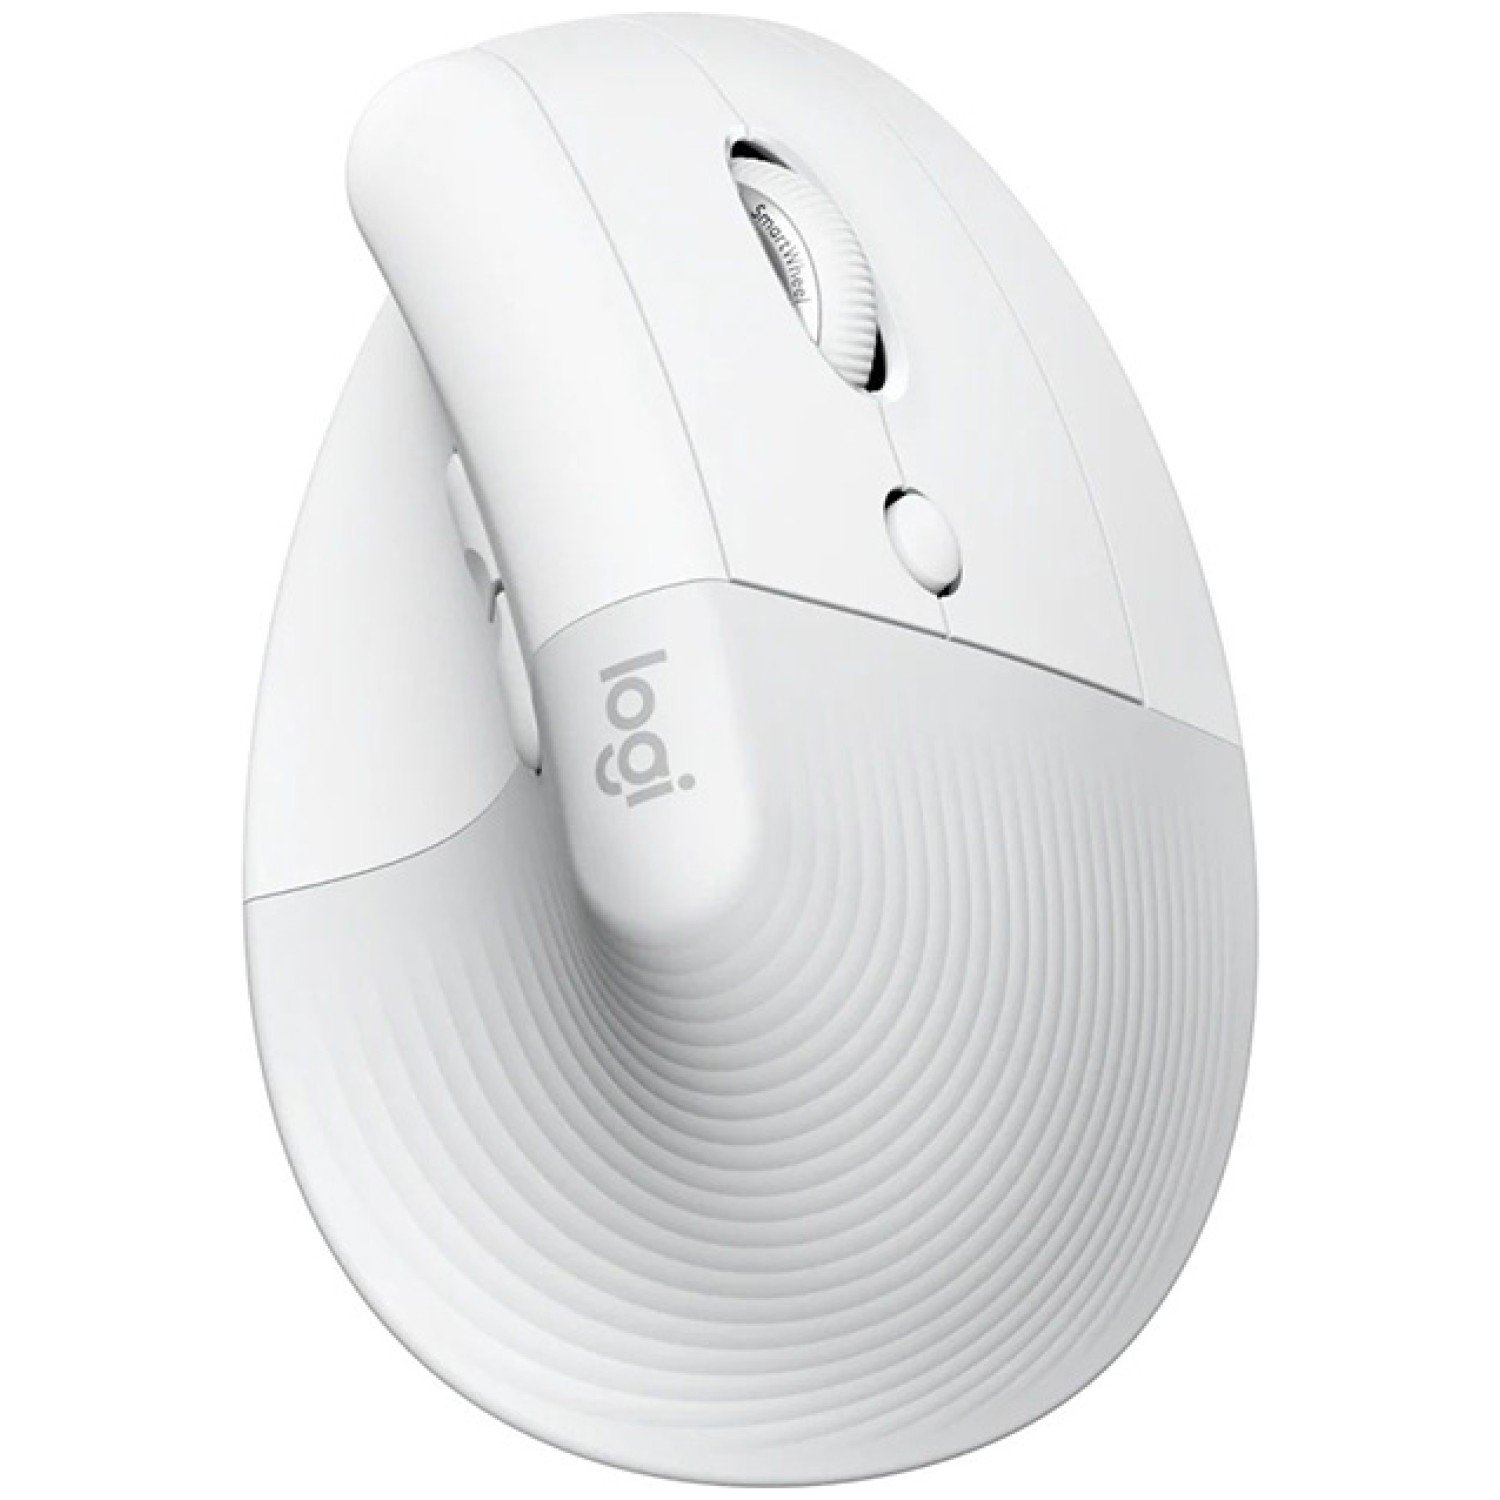 Miš brezžična + Bluetooth Logitech Lift Vertical za desničarje 4000DPI ergonomična bela (910-006475)